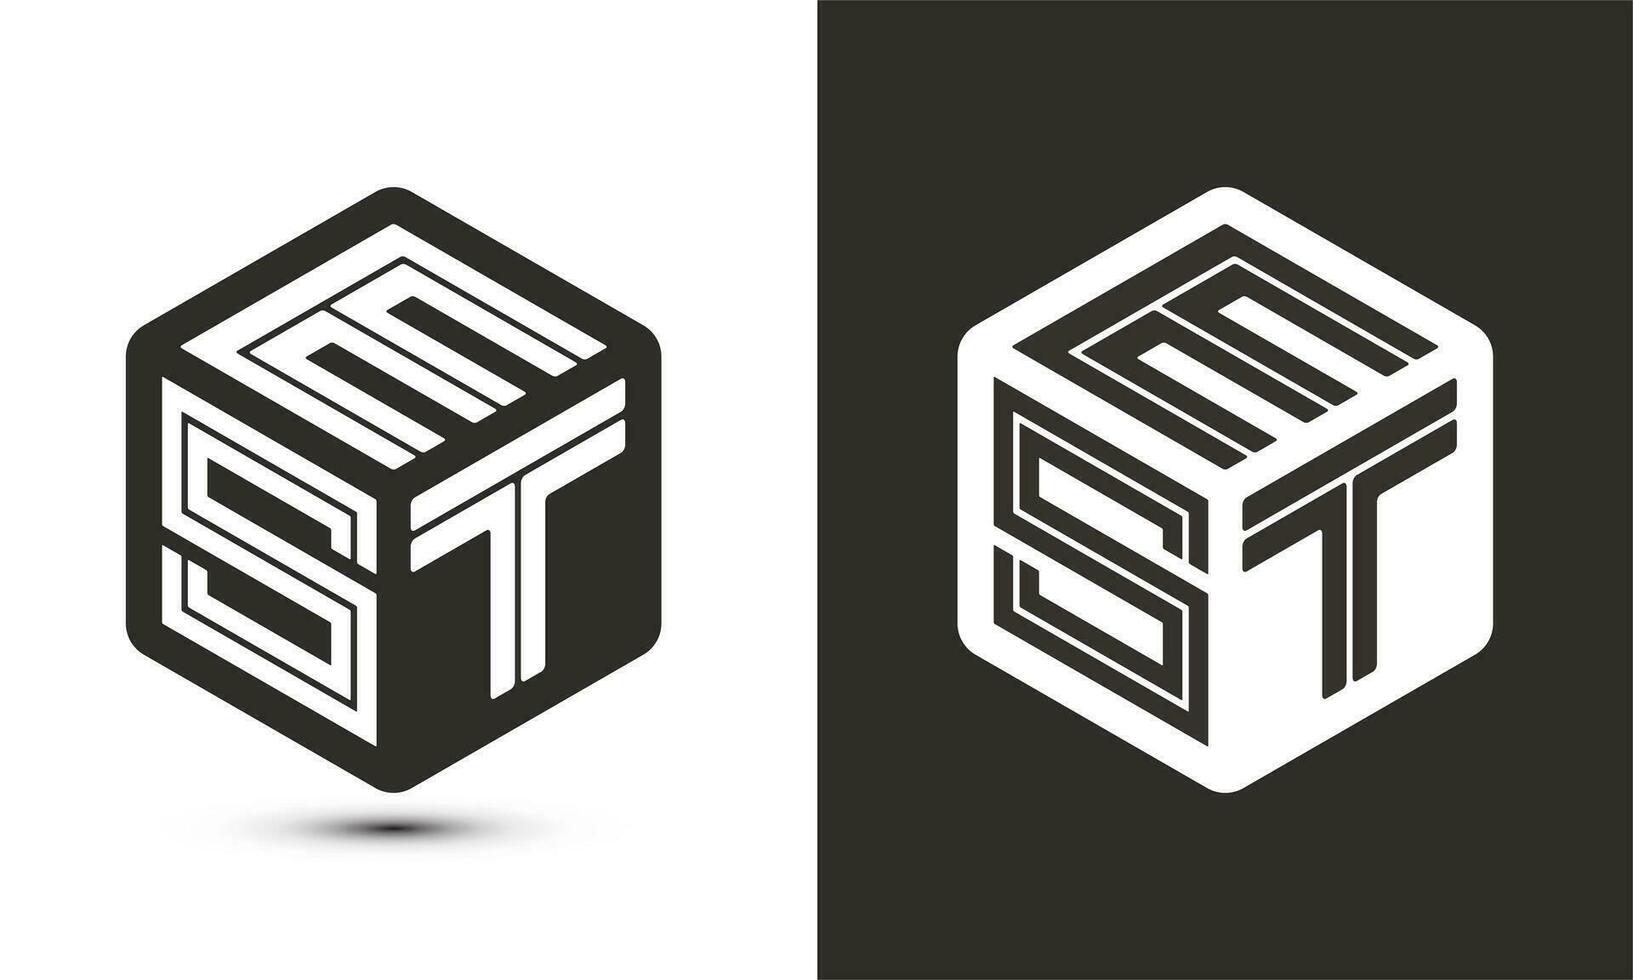 est lettre logo conception avec illustrateur cube logo, vecteur logo moderne alphabet Police de caractère chevauchement style.